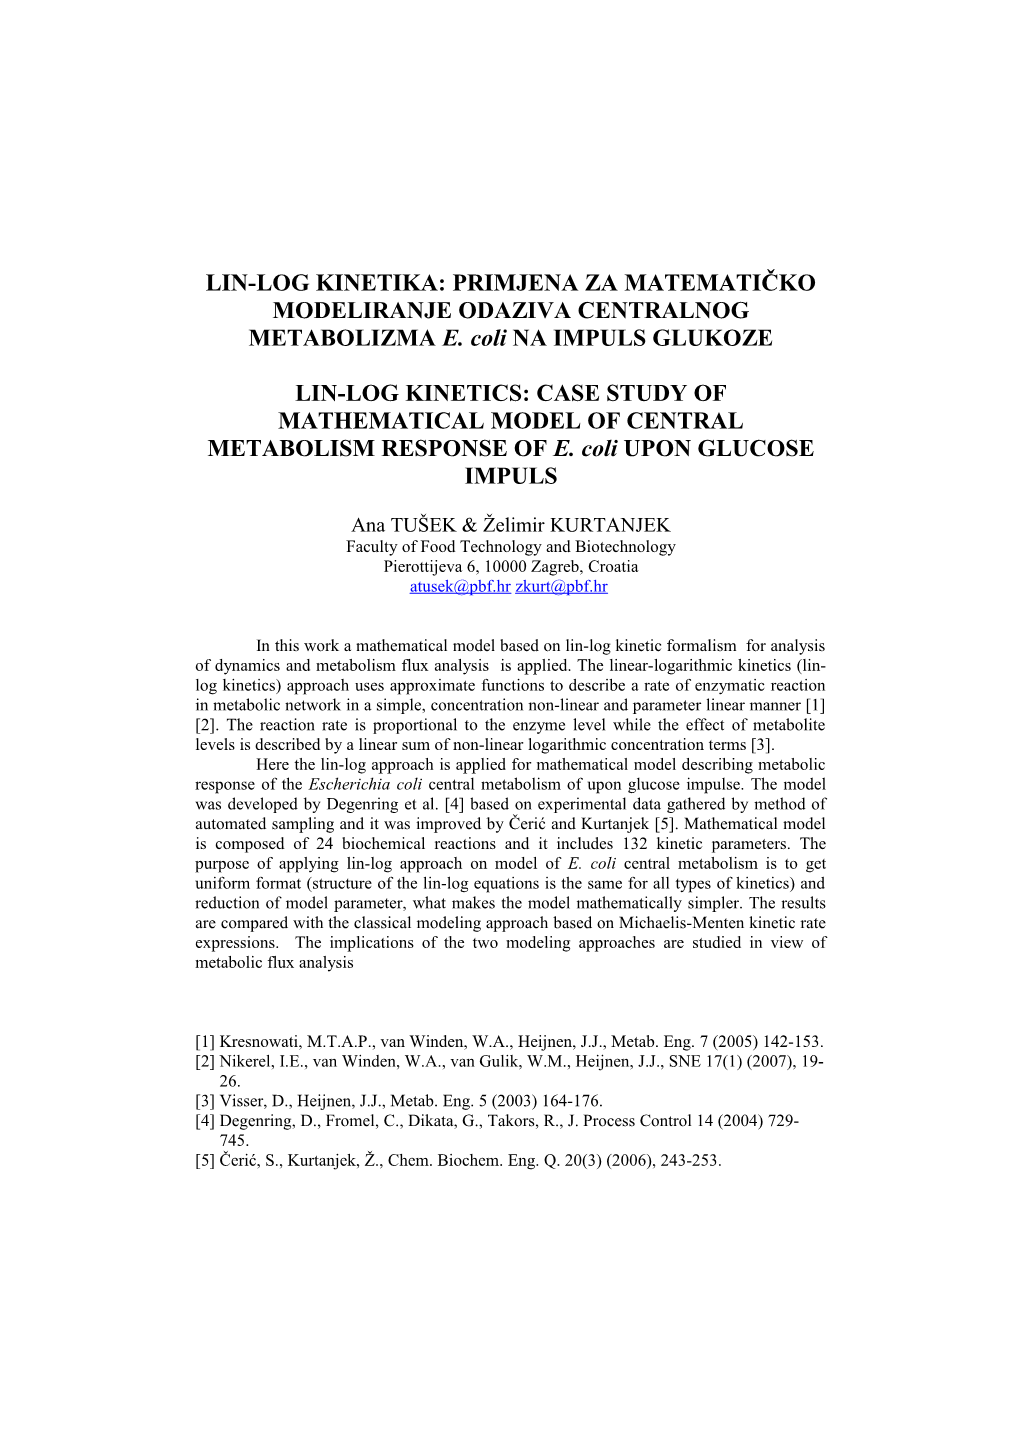 Lin-Log Kinetika: Primjena Na Matematički Model Centralnog Metabolizma E